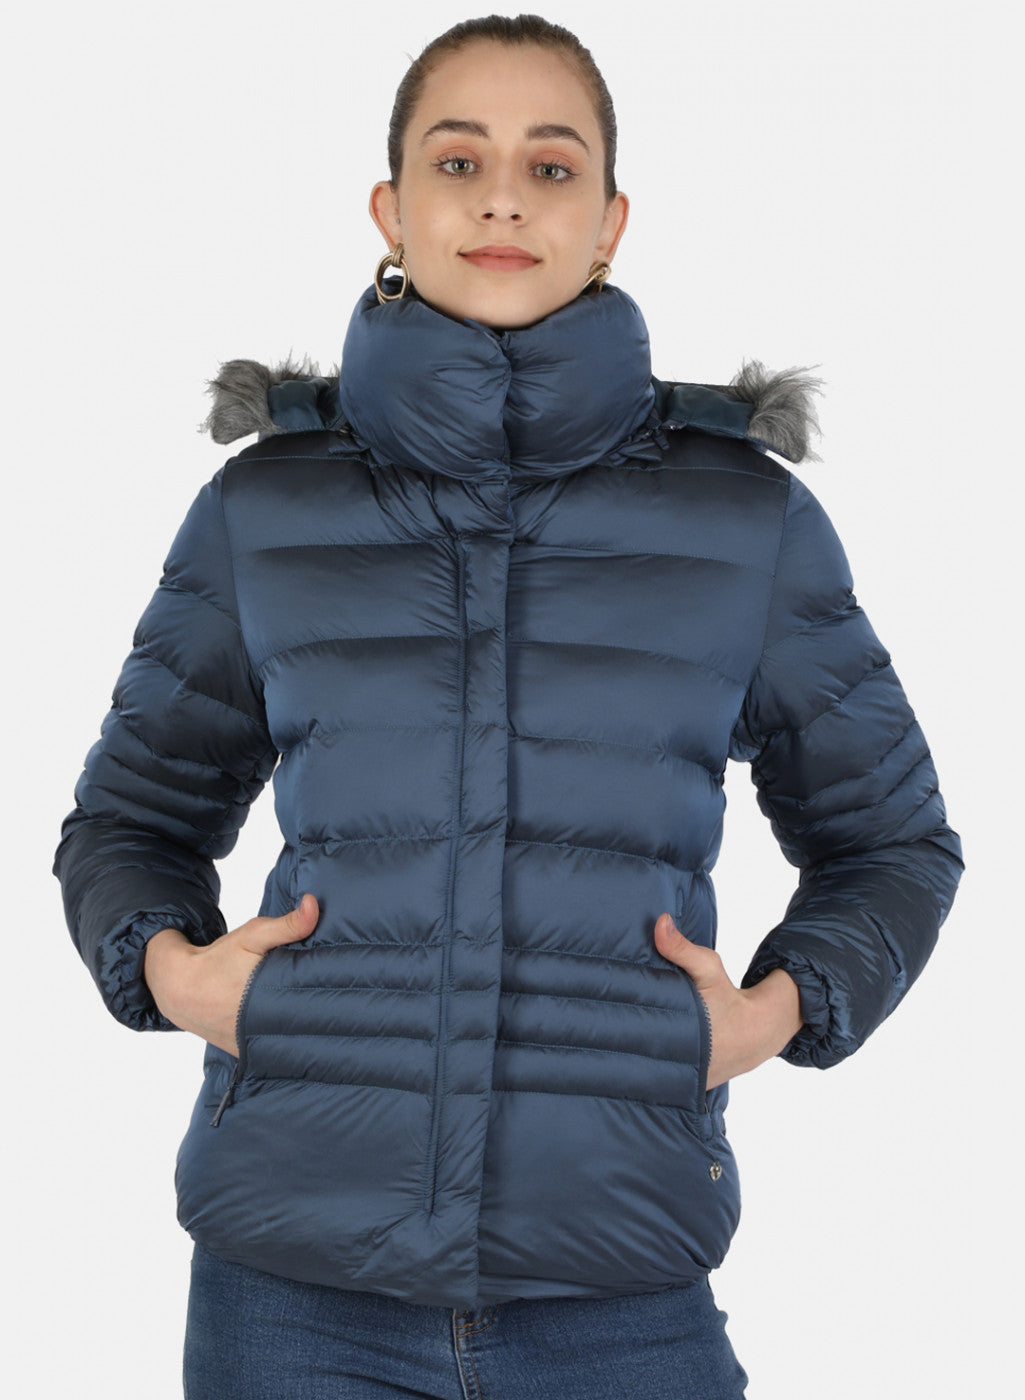 Winter Jackets for Women, जो महिलाओं को ठंड से बचाए और स्टाइलिश लुक भी दे